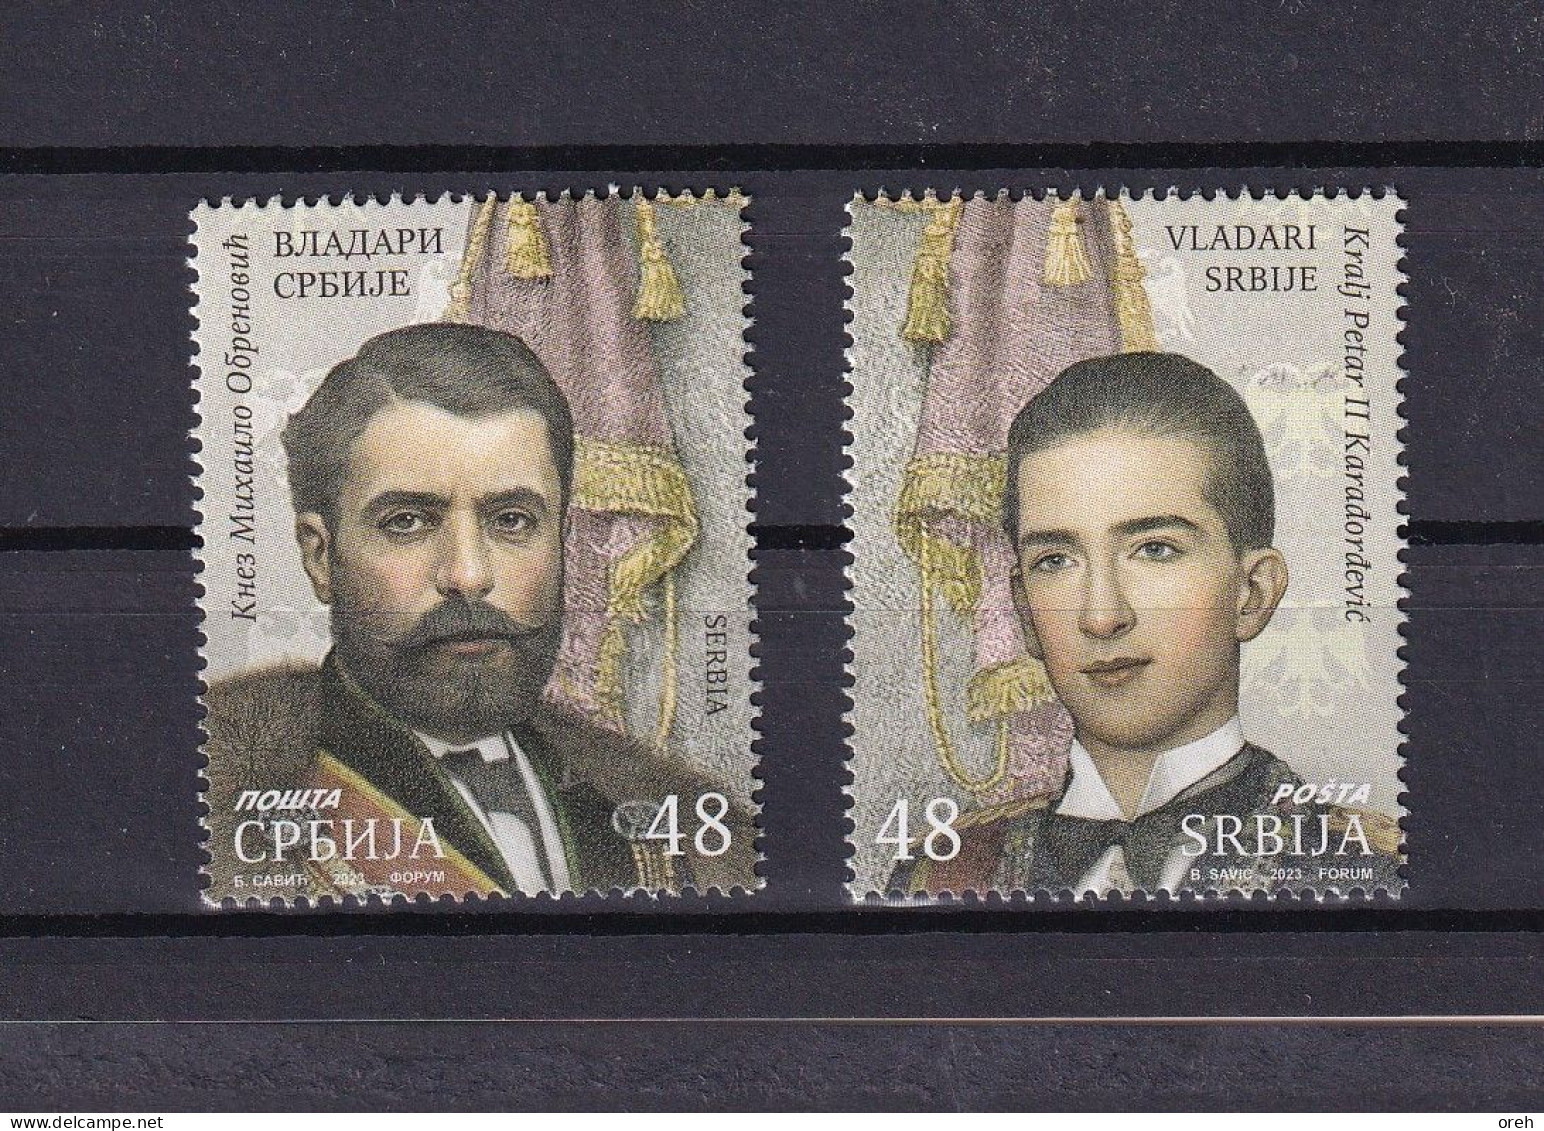 SERBIA 2023,Rulers Of Serbia Mihailo Obrenovic And Petar II Karadordevic,MNH - Serbien